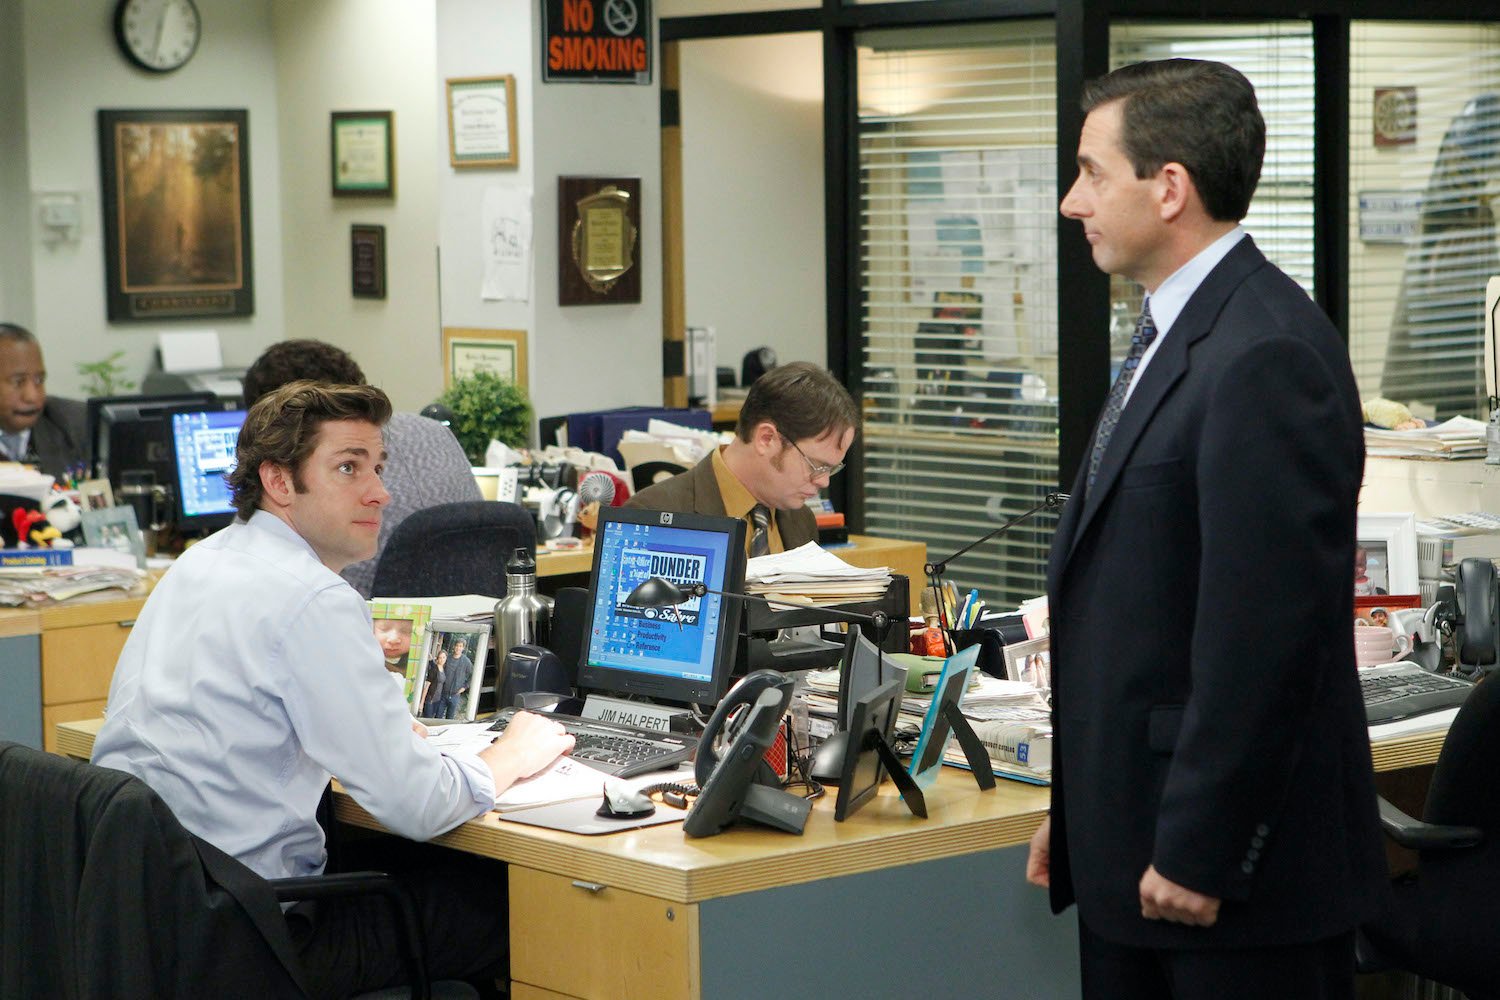 'The Office' cast: John Krasinski as Jim Halpert, Rainn Wilson as Dwight Schrute, and Steve Carell as Michael Scott at Jim's desk